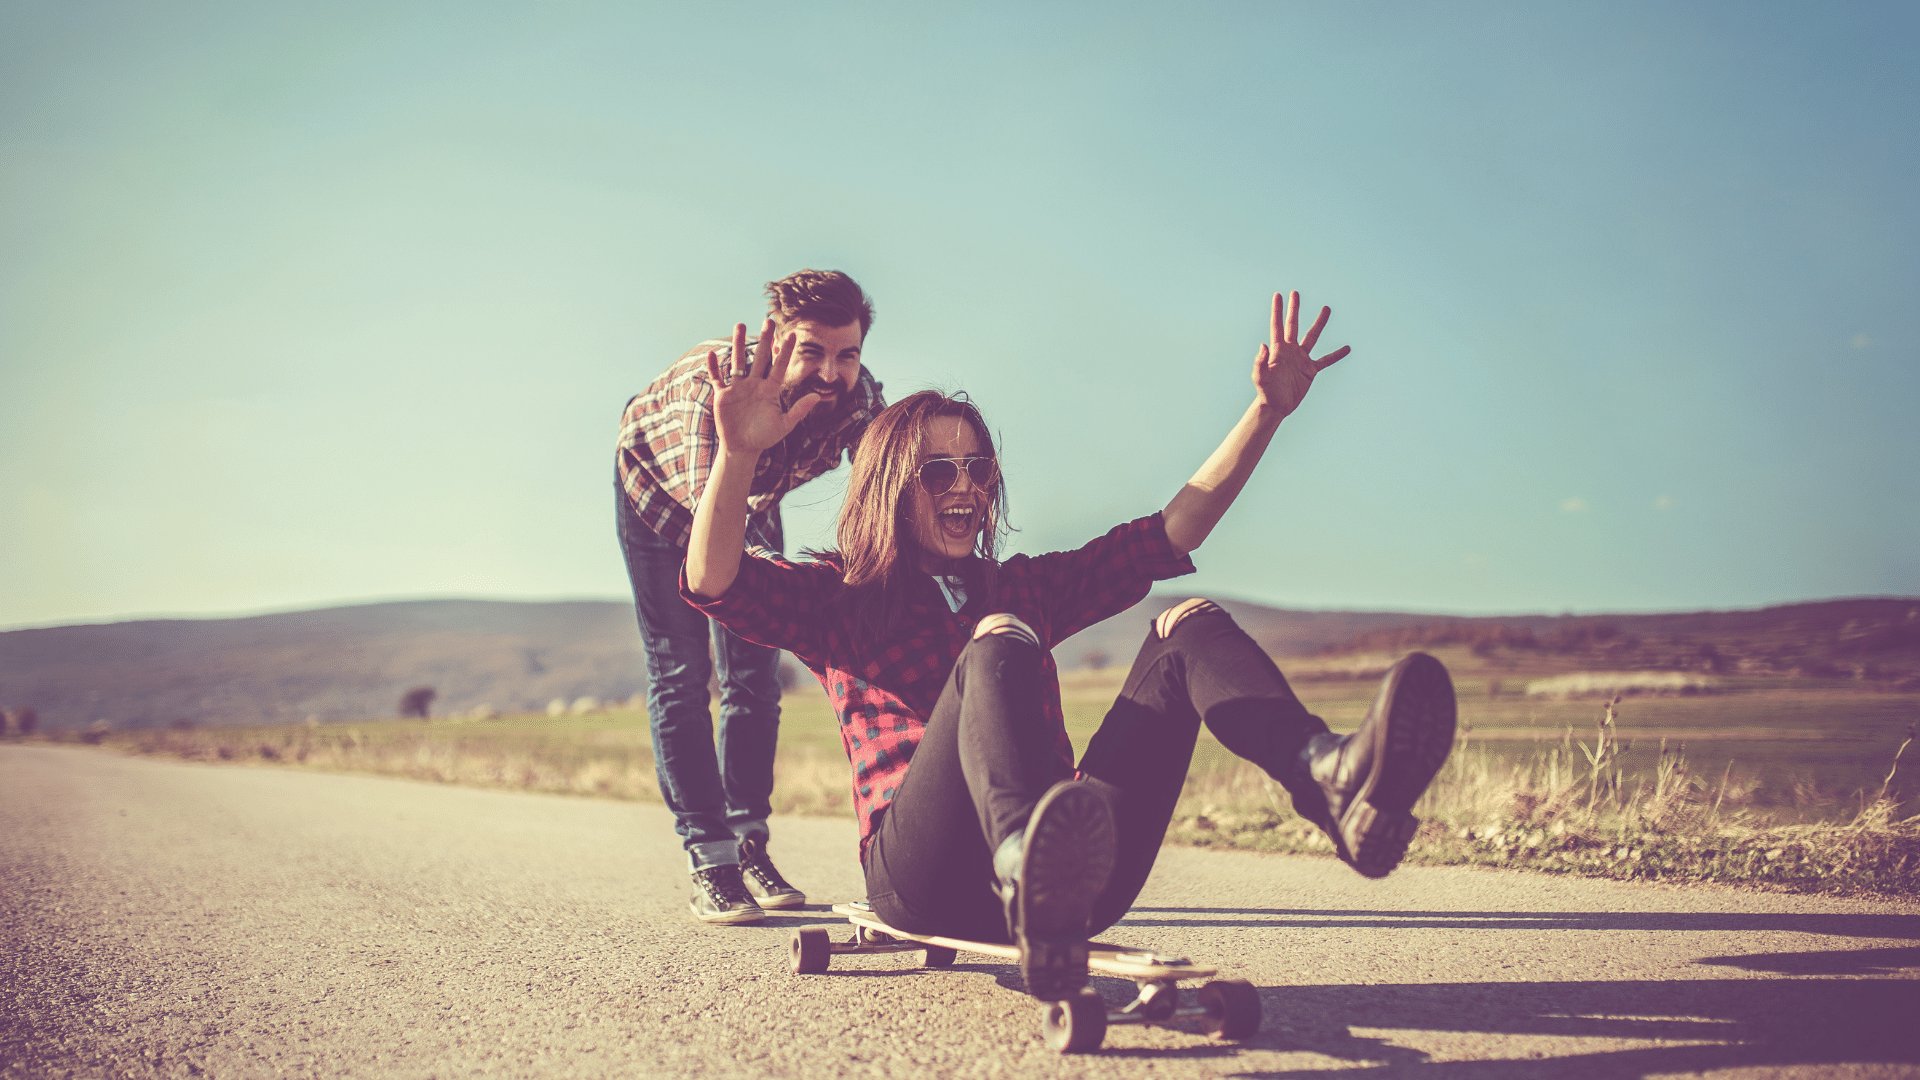 Mulher sentada em cima de um skate dando risada e se divertindo sendo empurrada por um homem